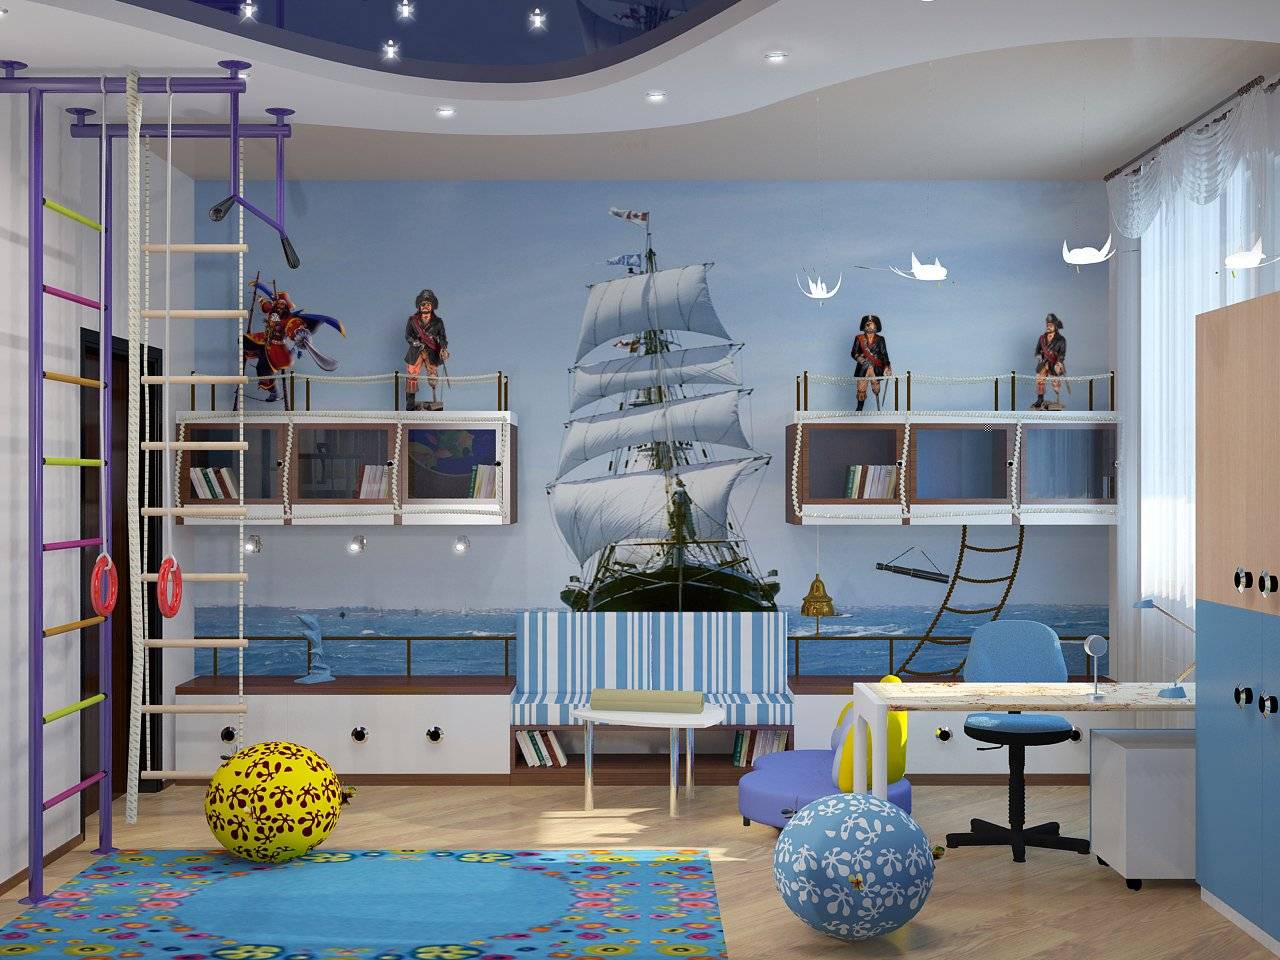 Обои в морском стиле для дизайна детской комнаты, гостиной или спальни